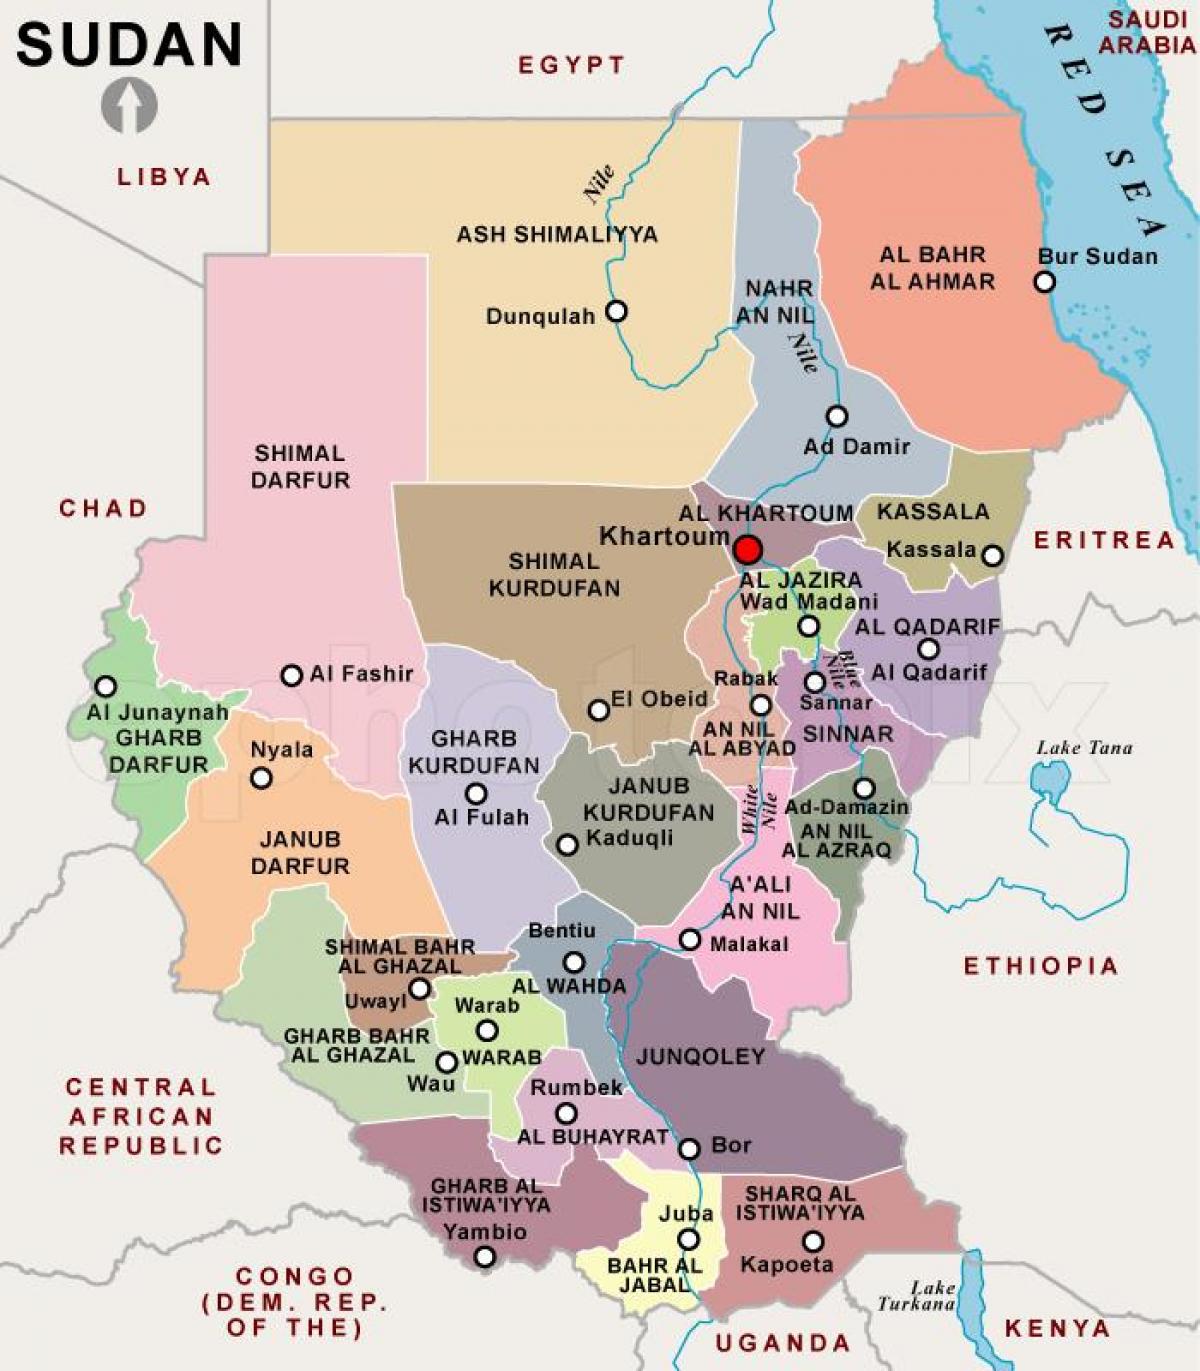 Kort over Sudan regioner